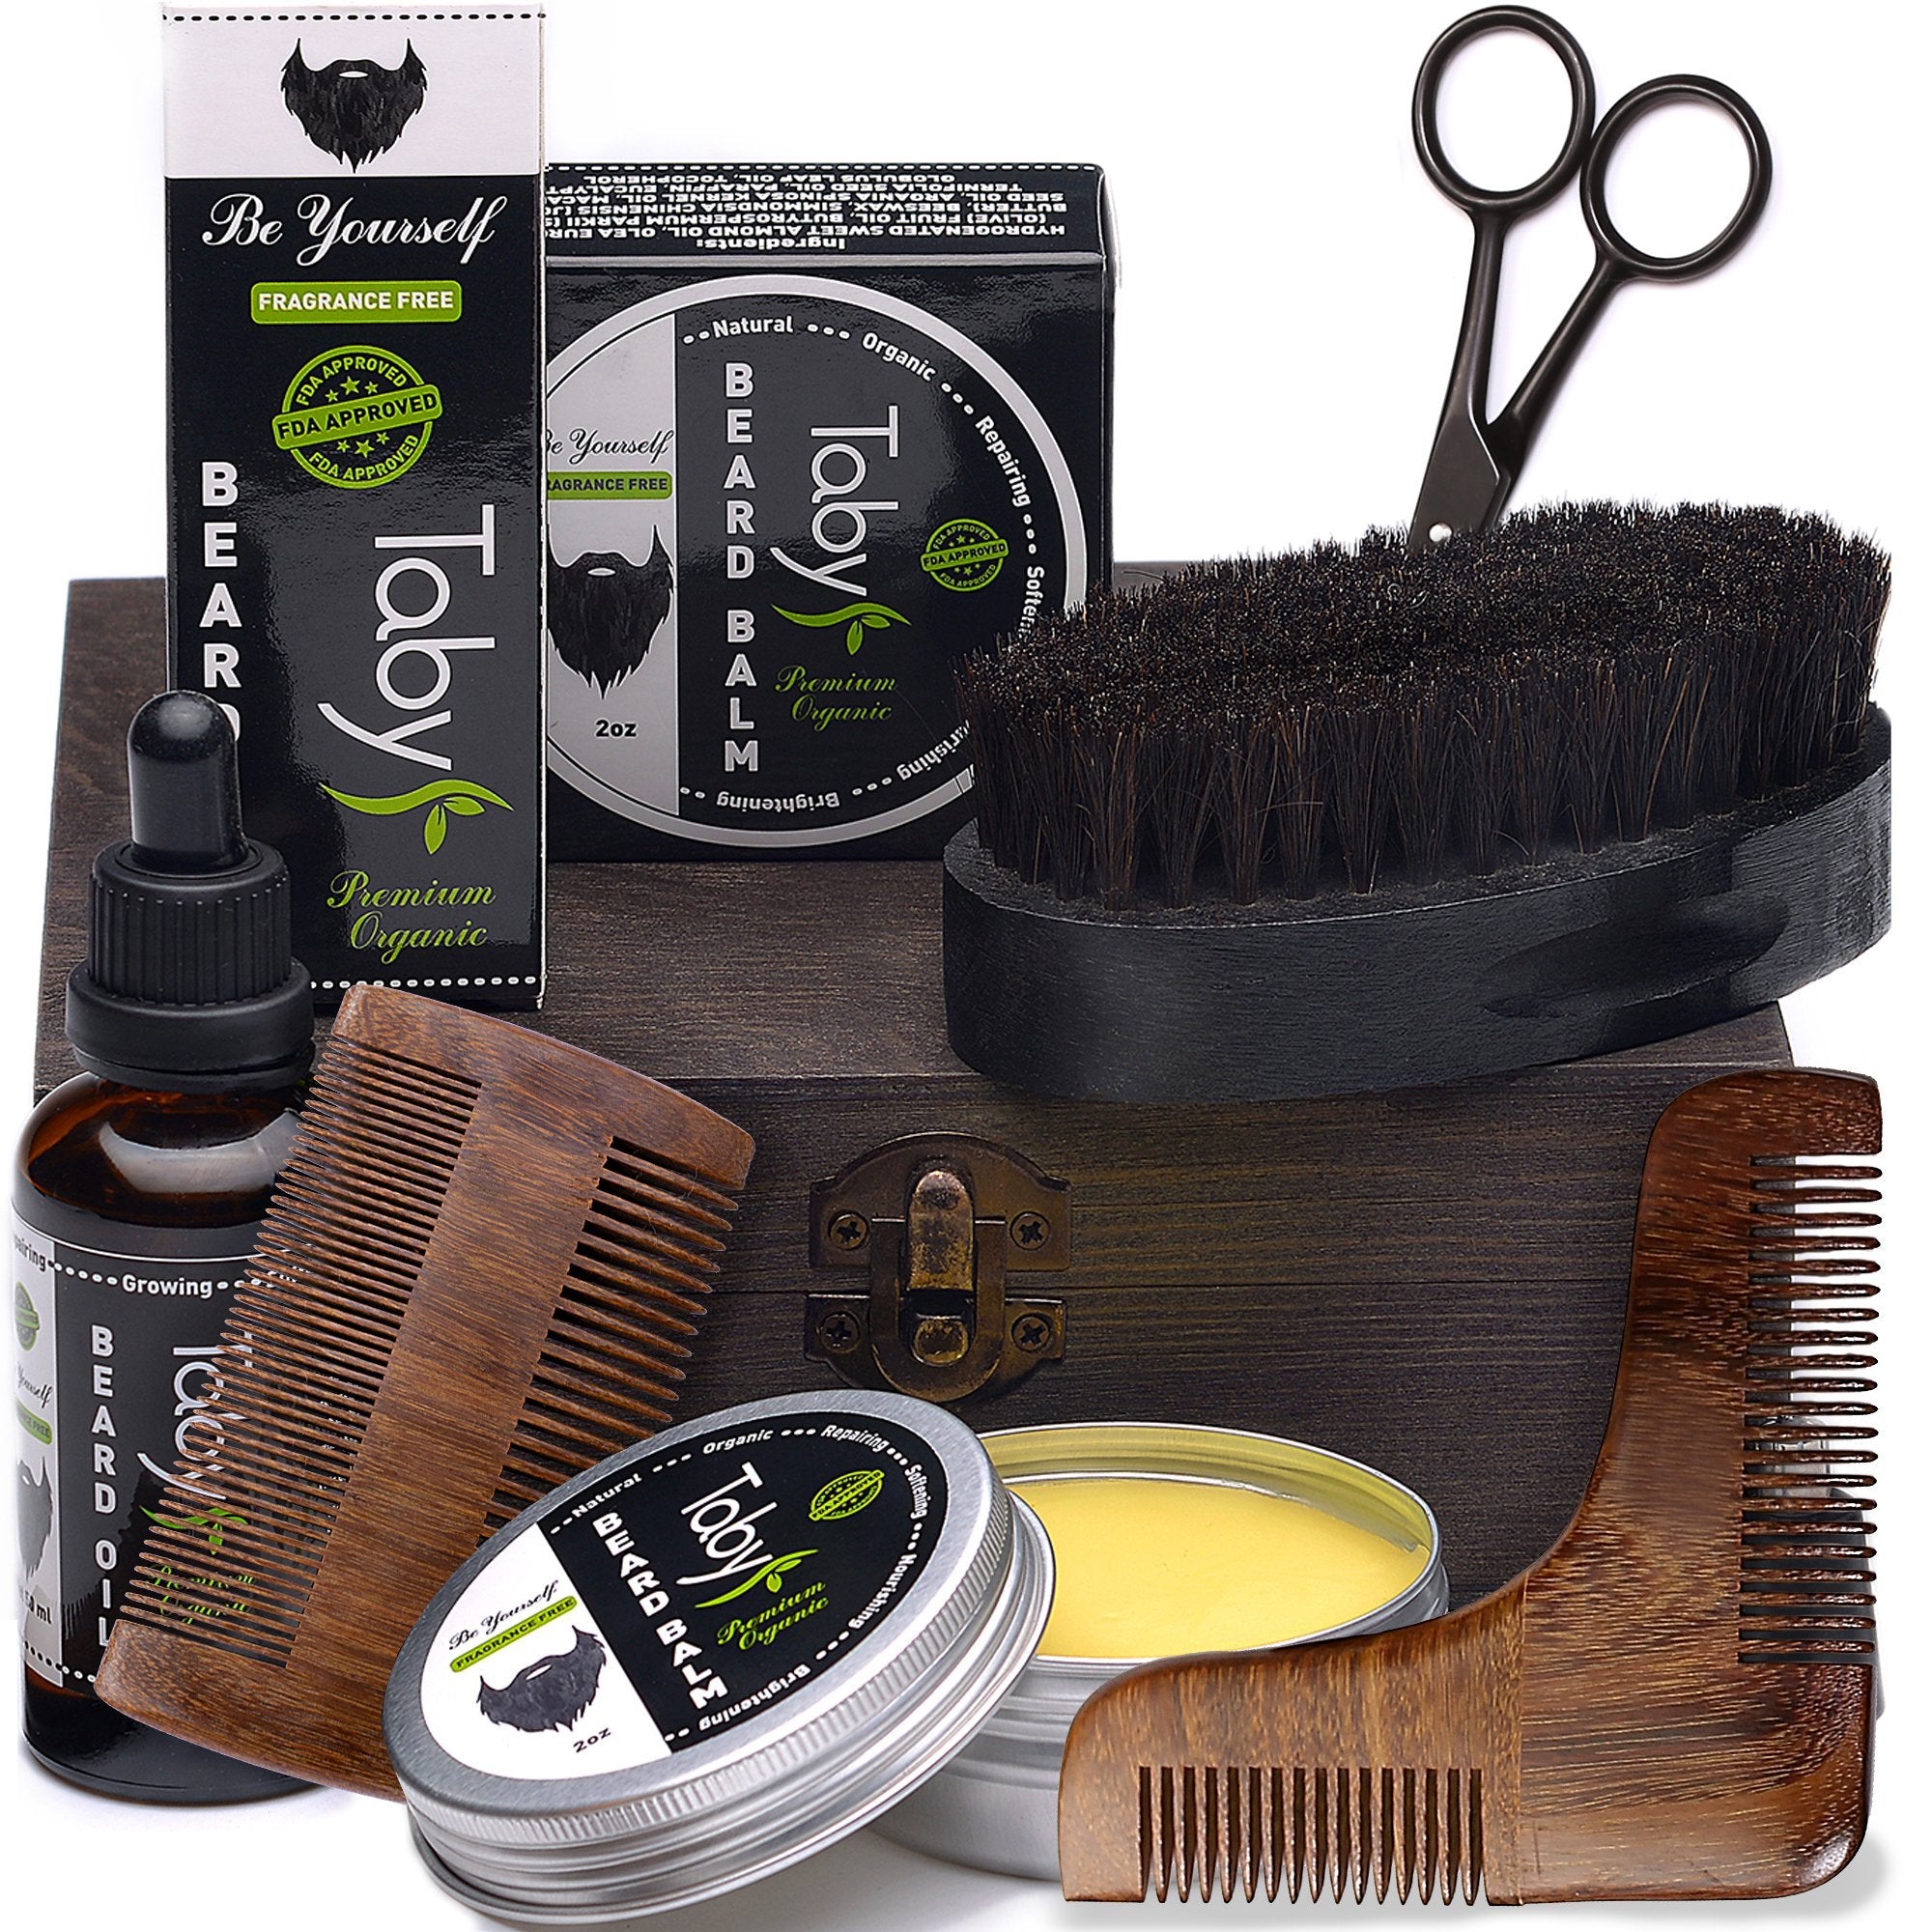 Beard Kit for Grooming & Trimming for Men